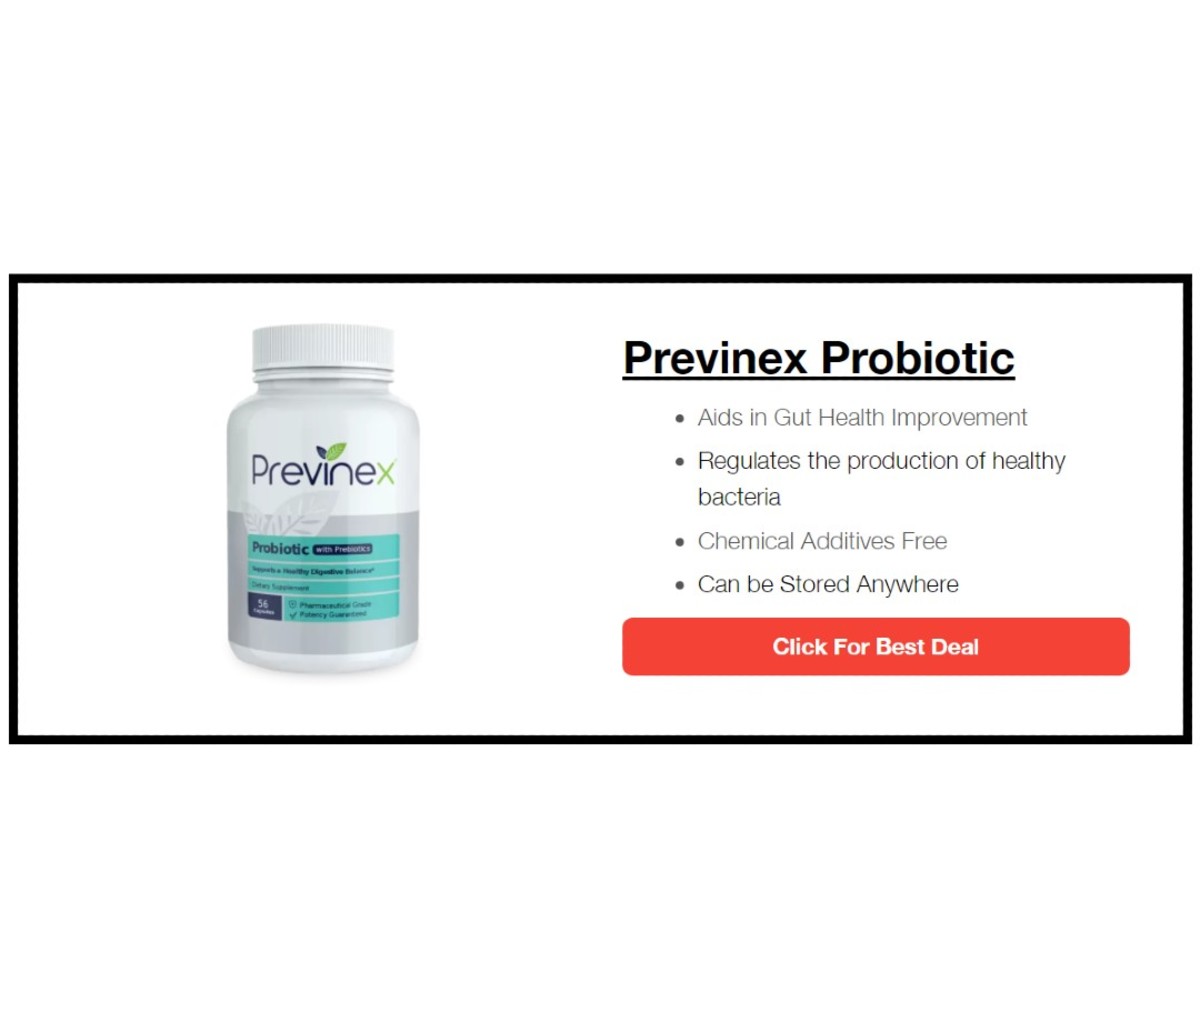 Previnex Probiotic